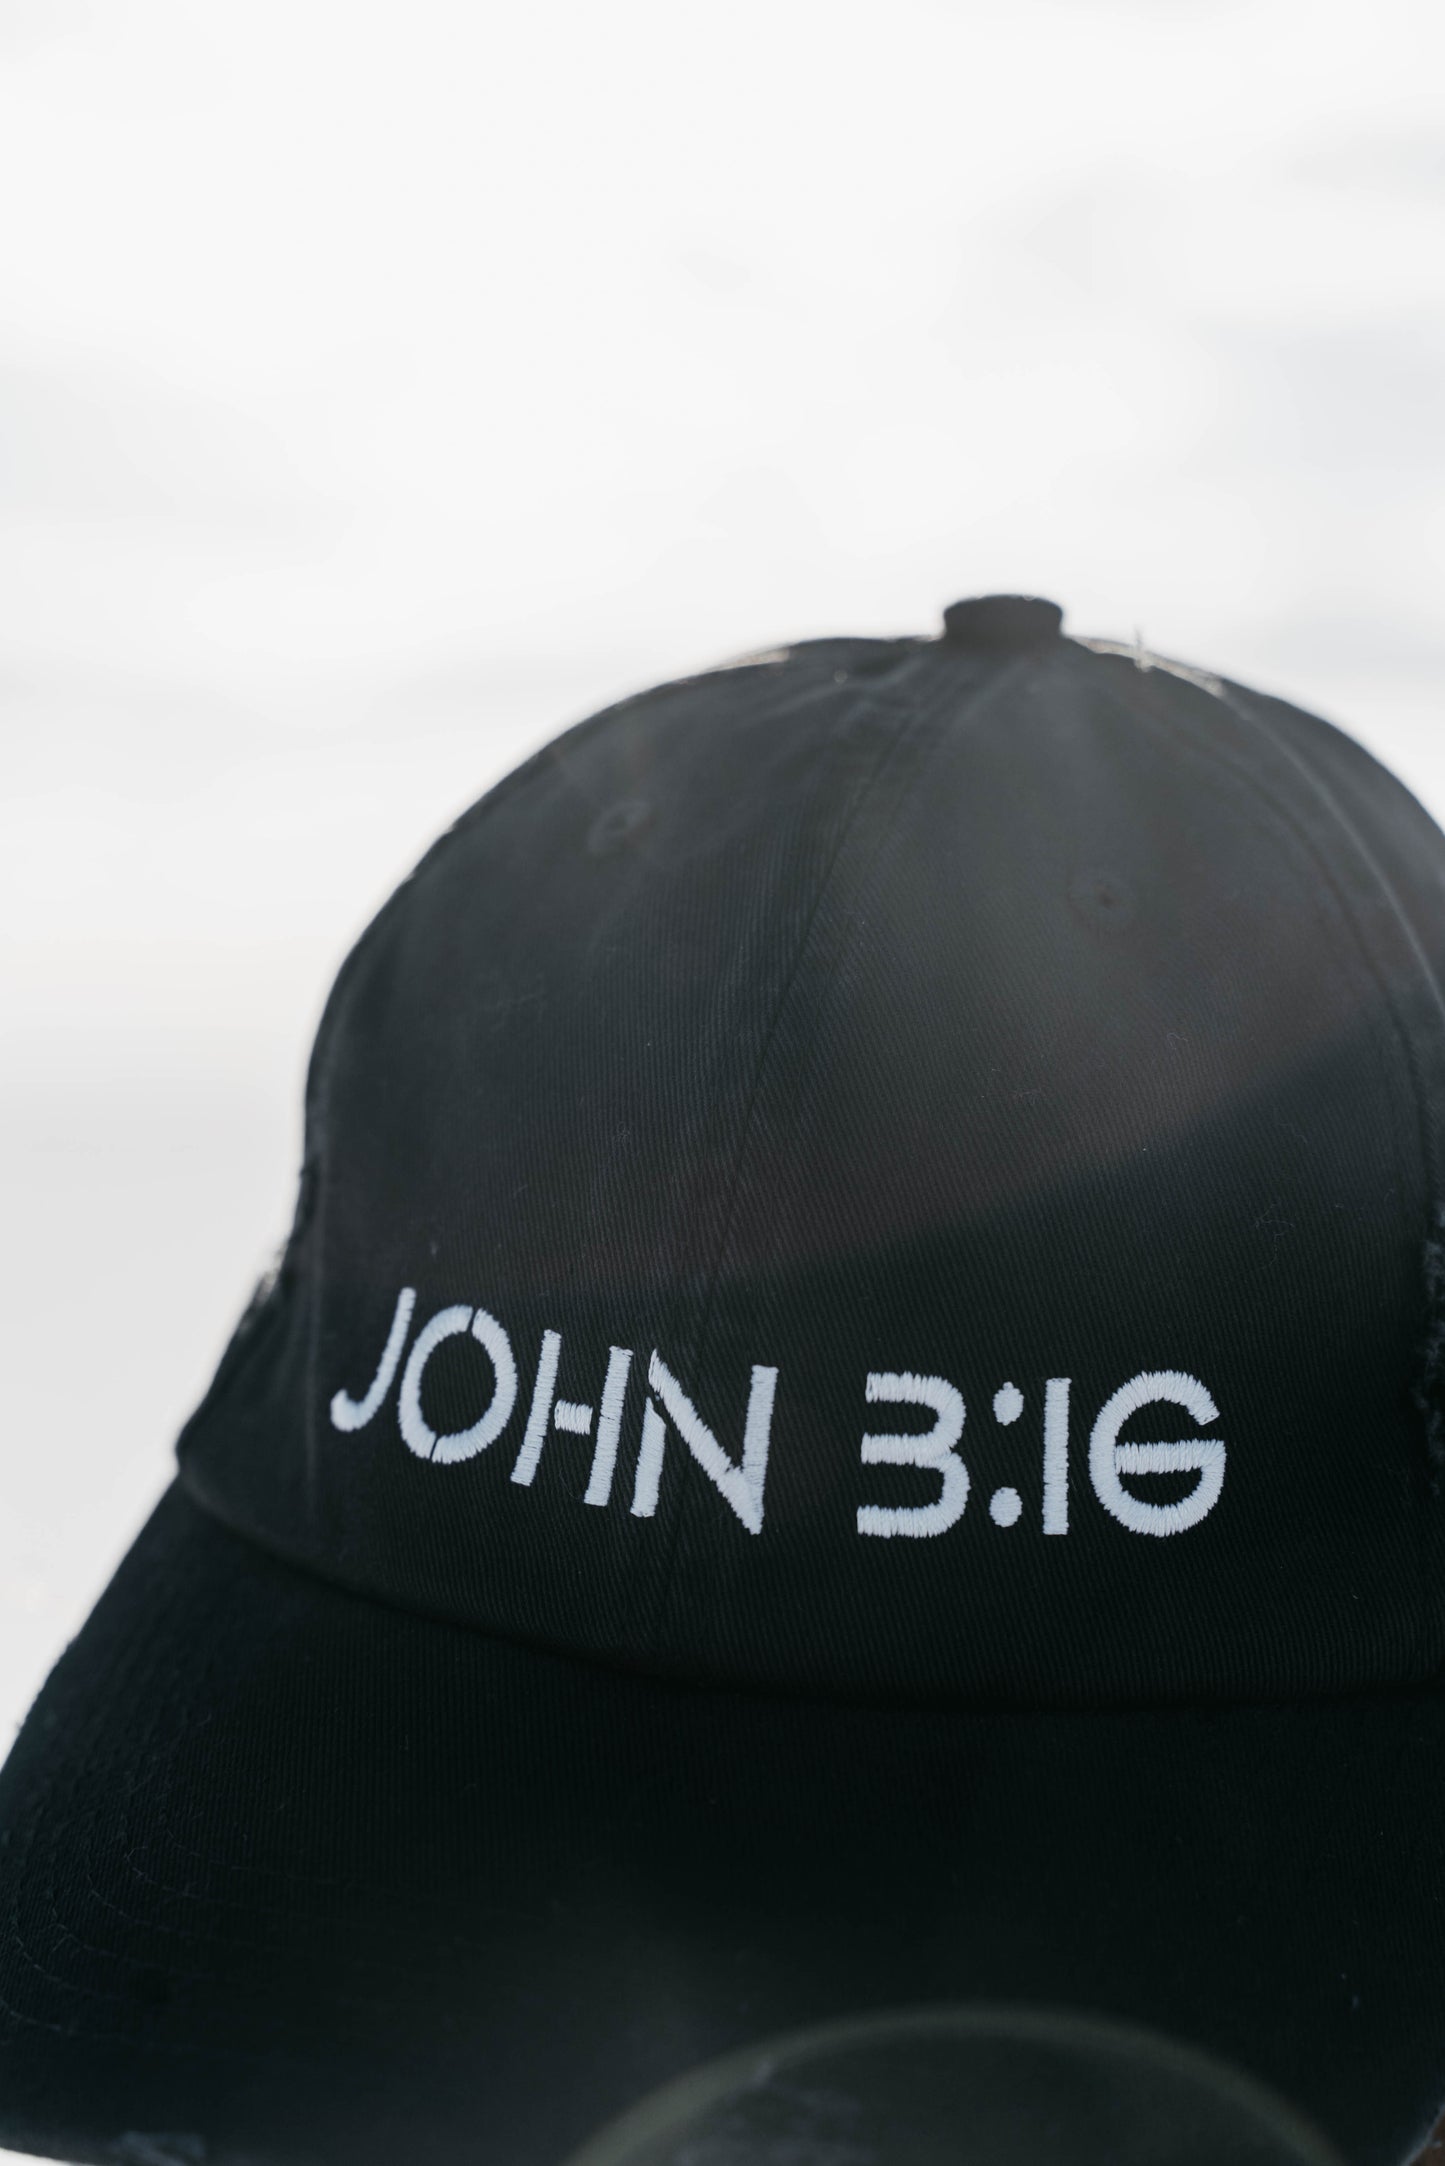 " JOHN 3:16 " Black Unisex Distressed Cap